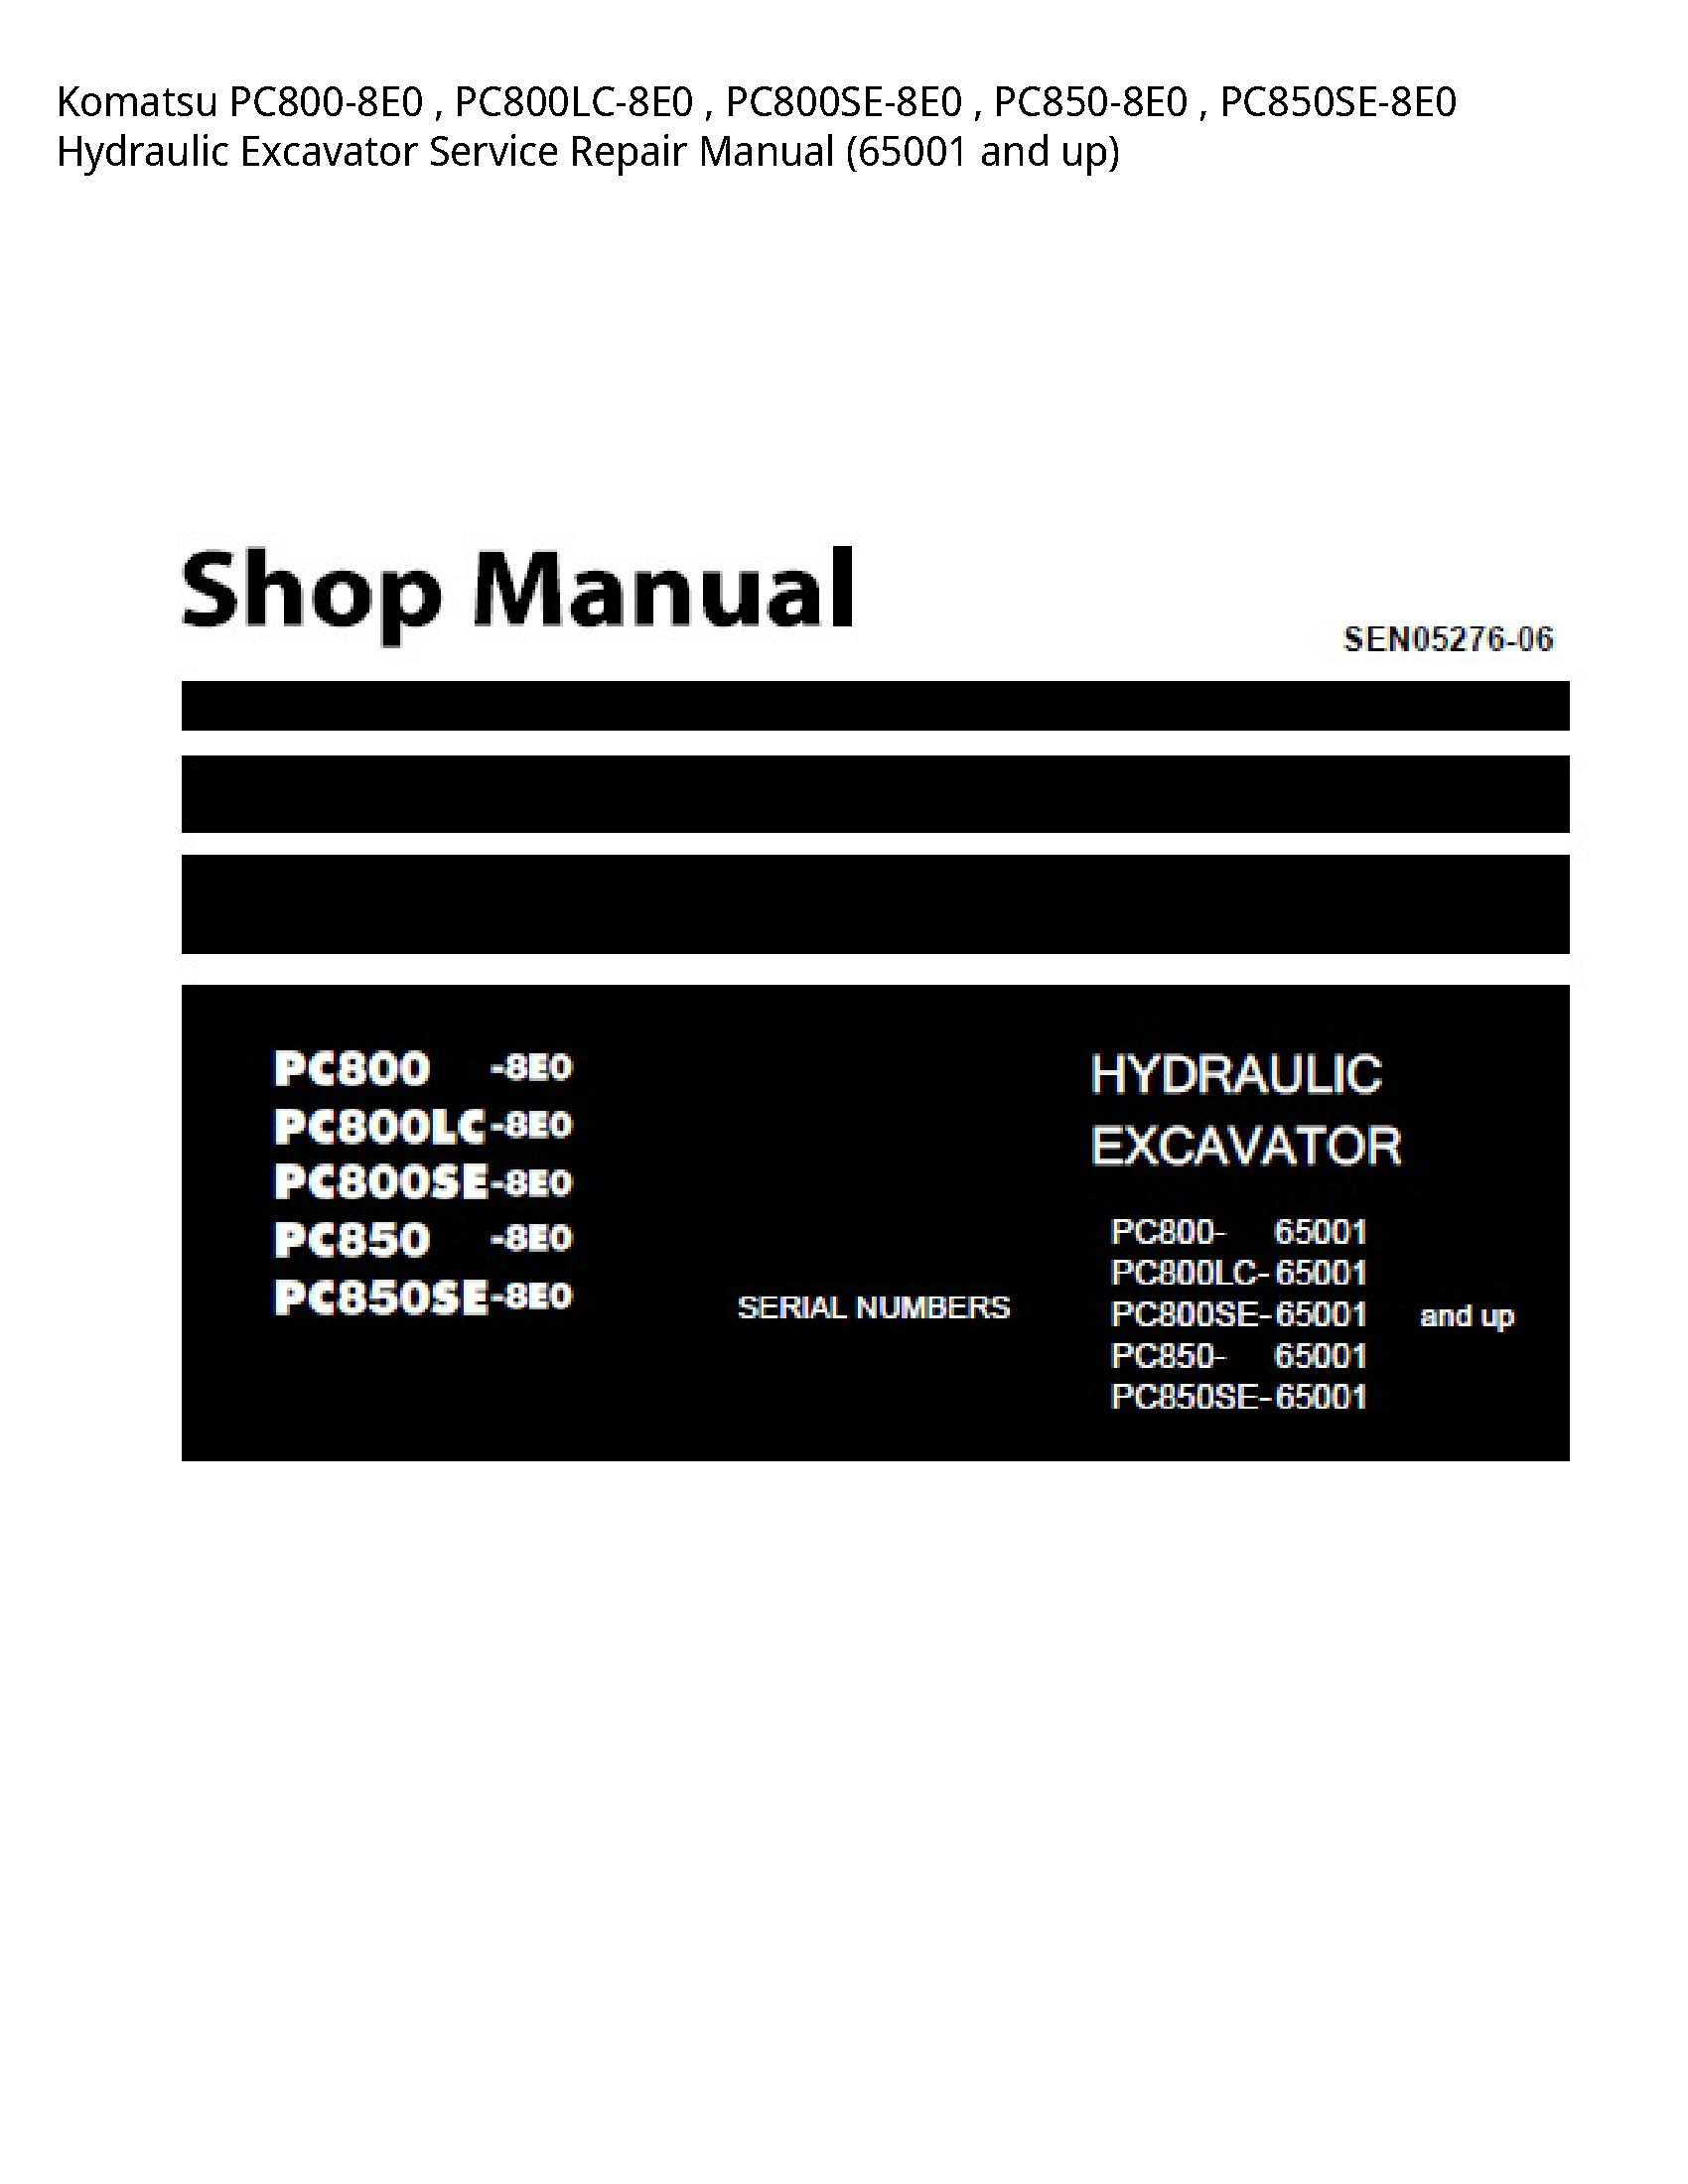 KOMATSU PC800-8E0 Hydraulic Excavator manual